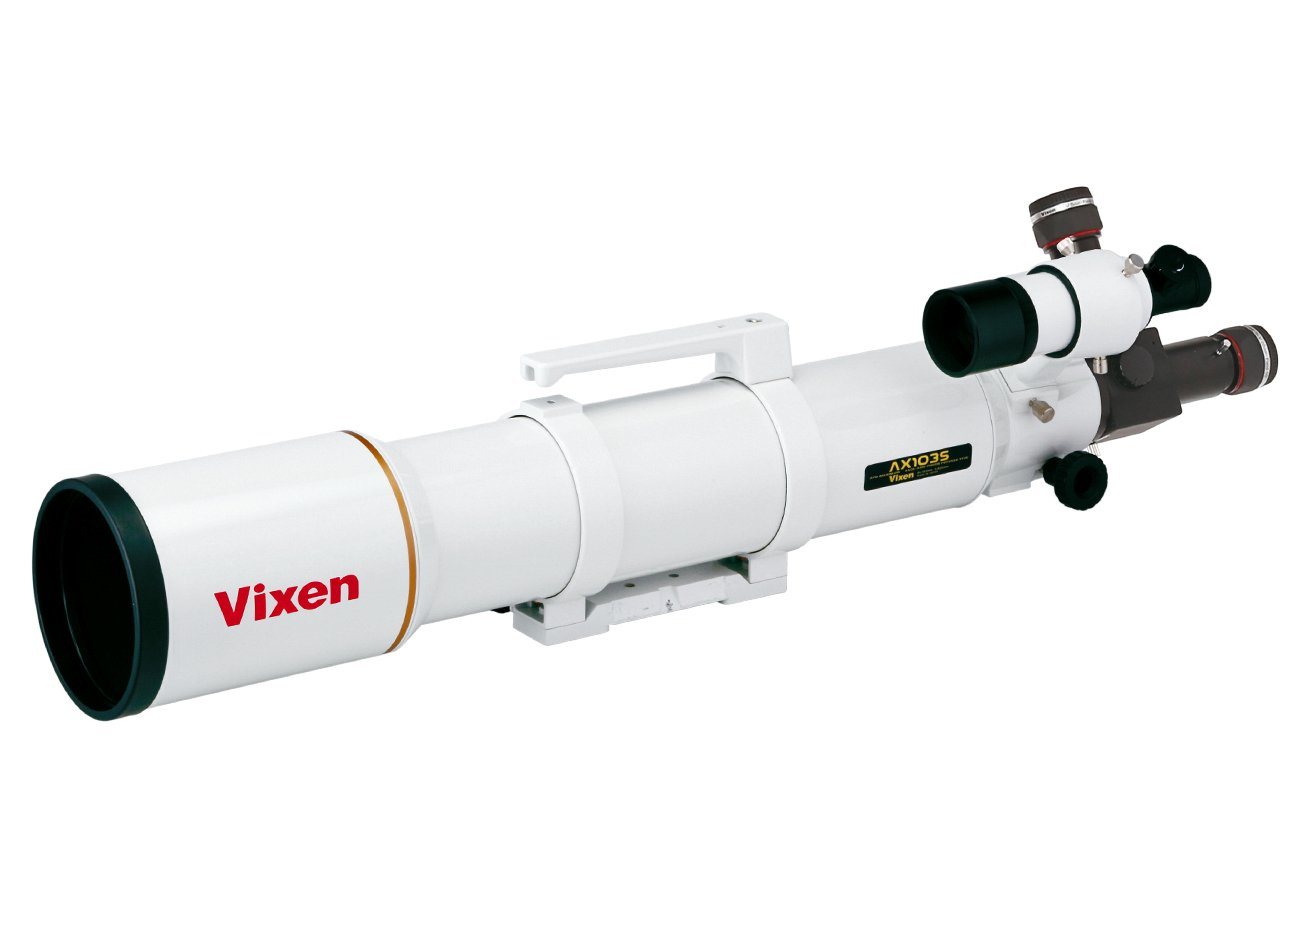 Vixen Teleskop AX103S apochromatischer Refraktor - optischer Tubus von Vixen